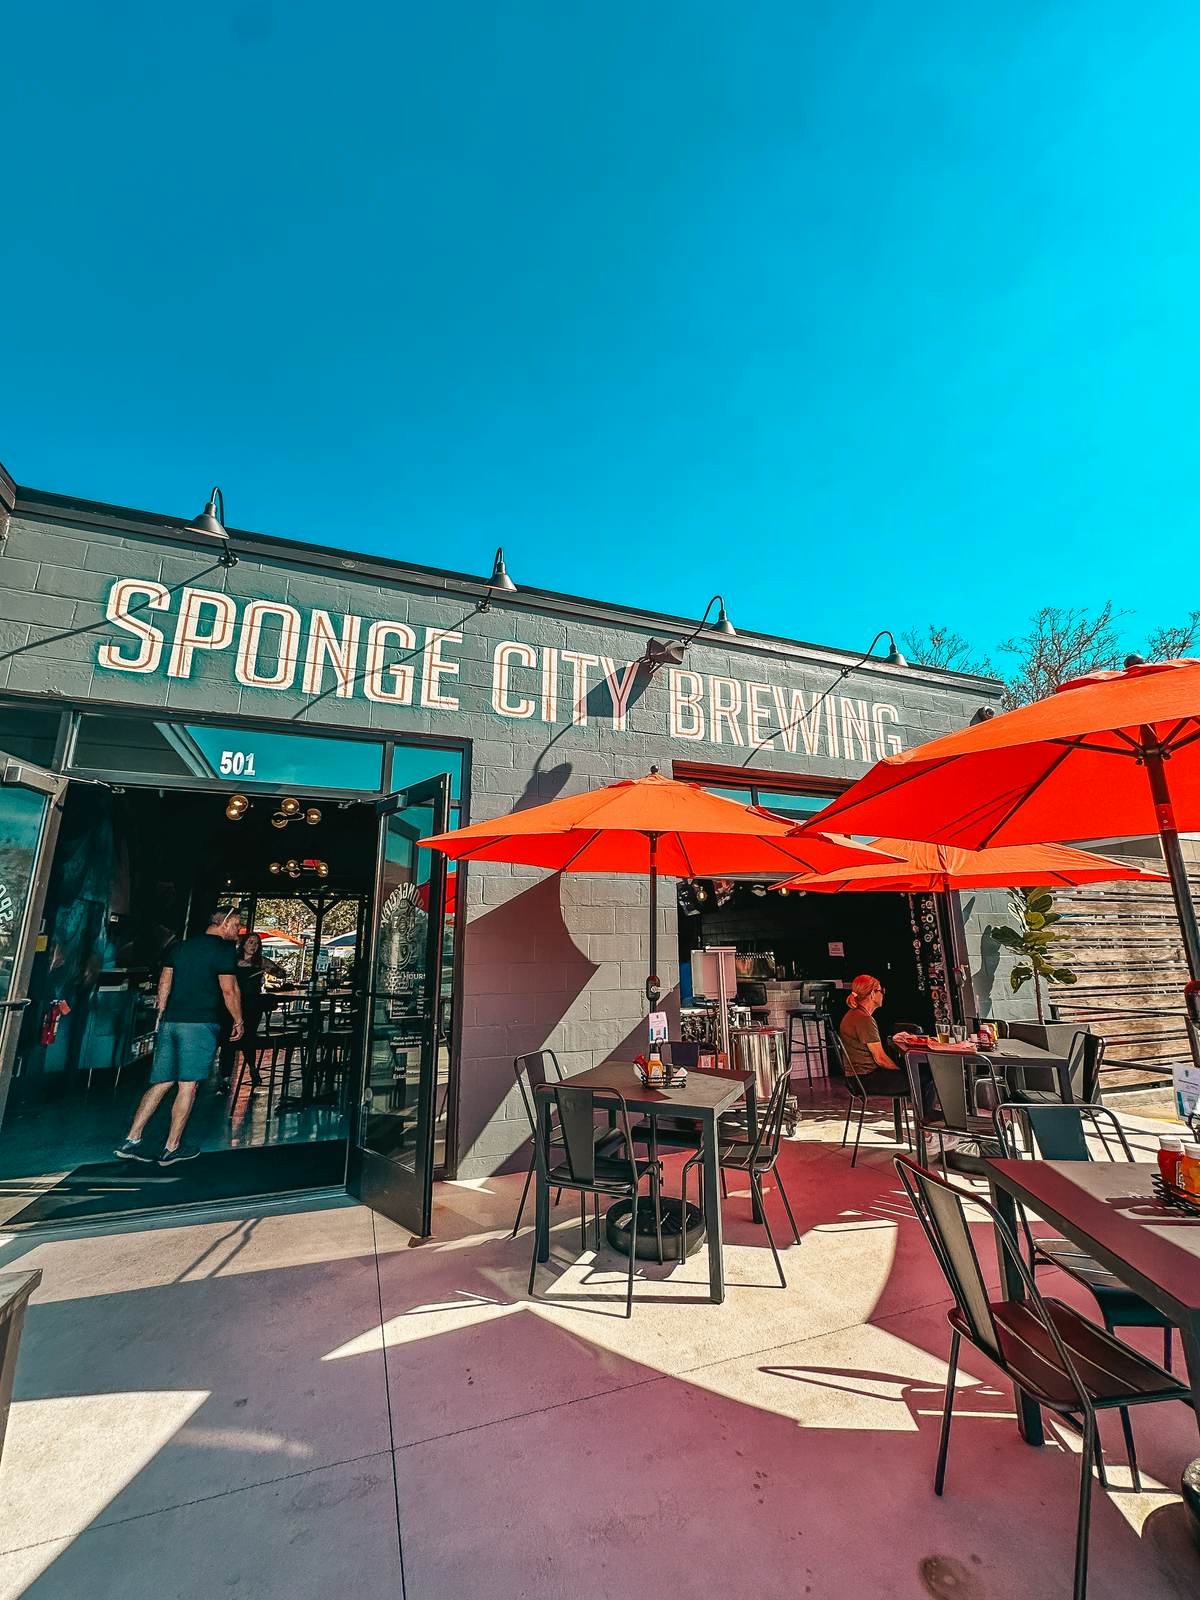 Sponge City Brewing in Tarpon Springs